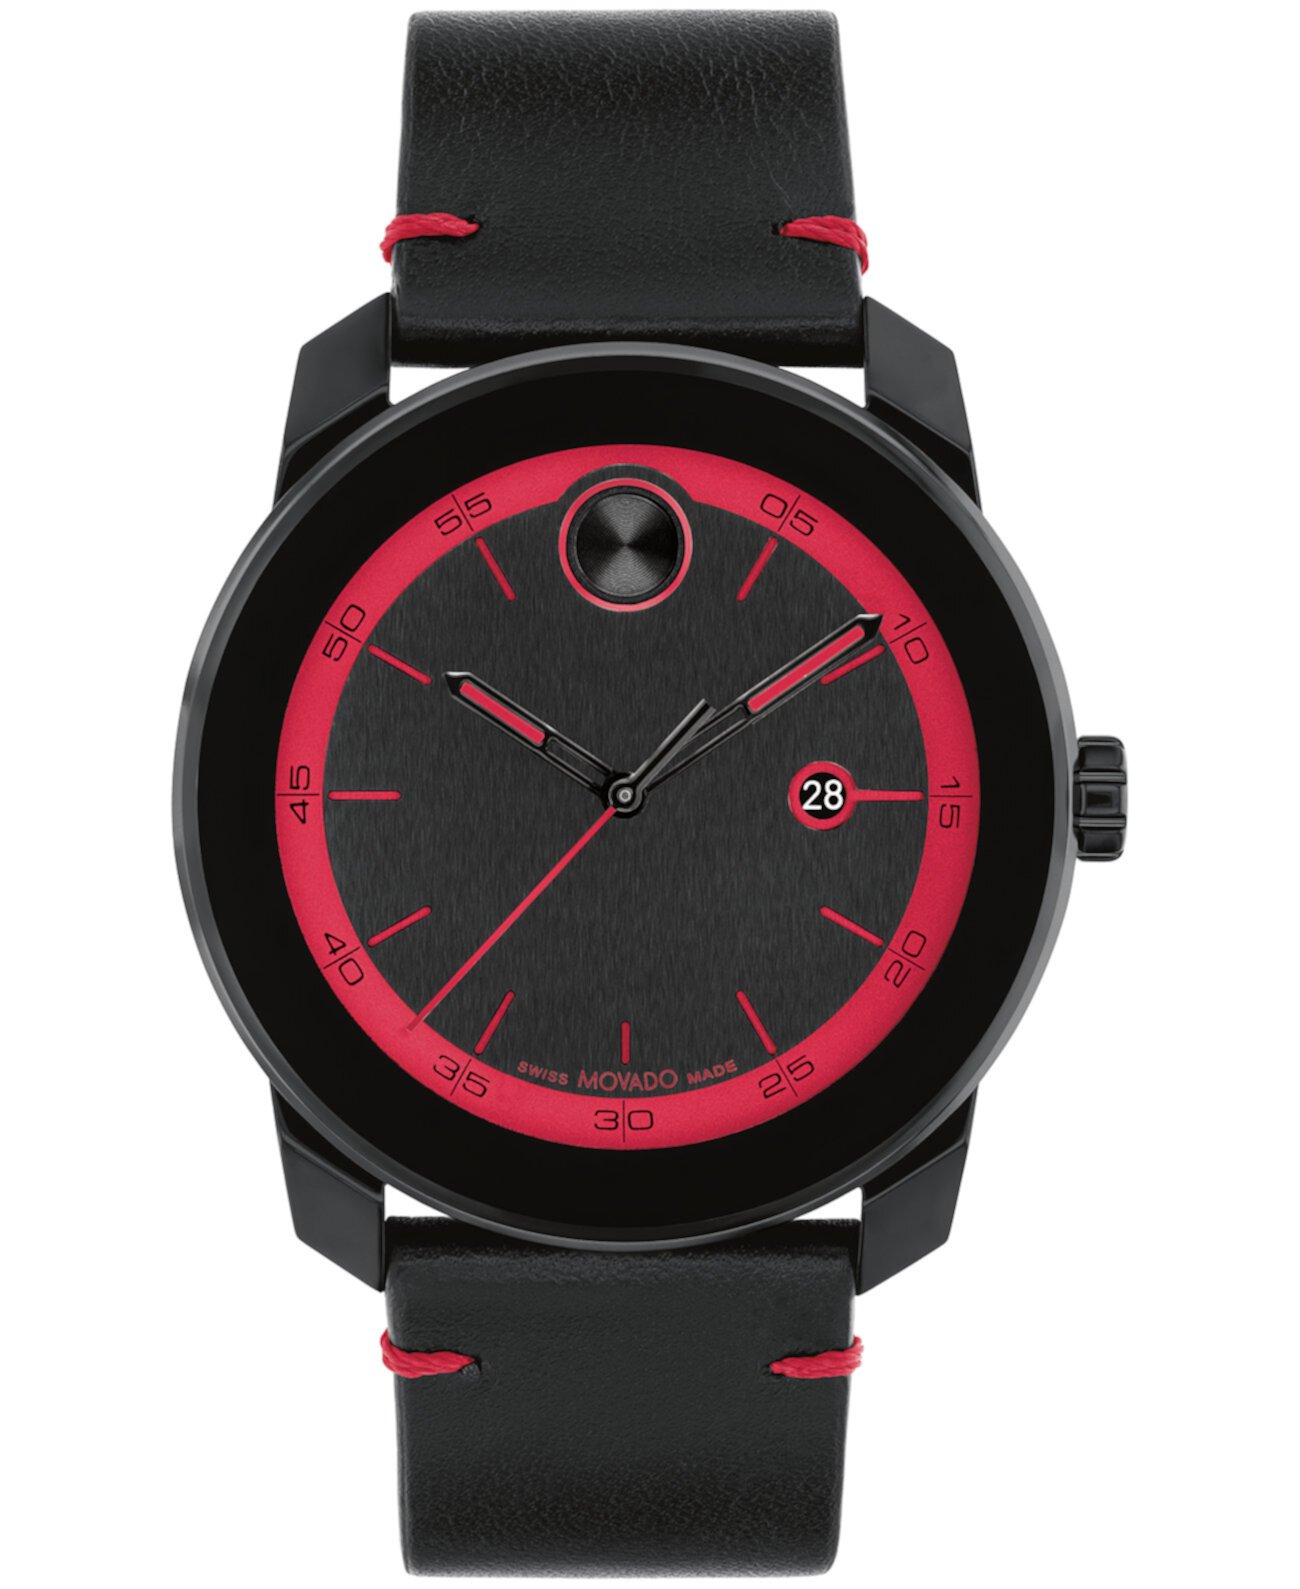 Мужские часы Bold Tr90 со швейцарским кварцем, черные кожаные часы, 42 мм Movado